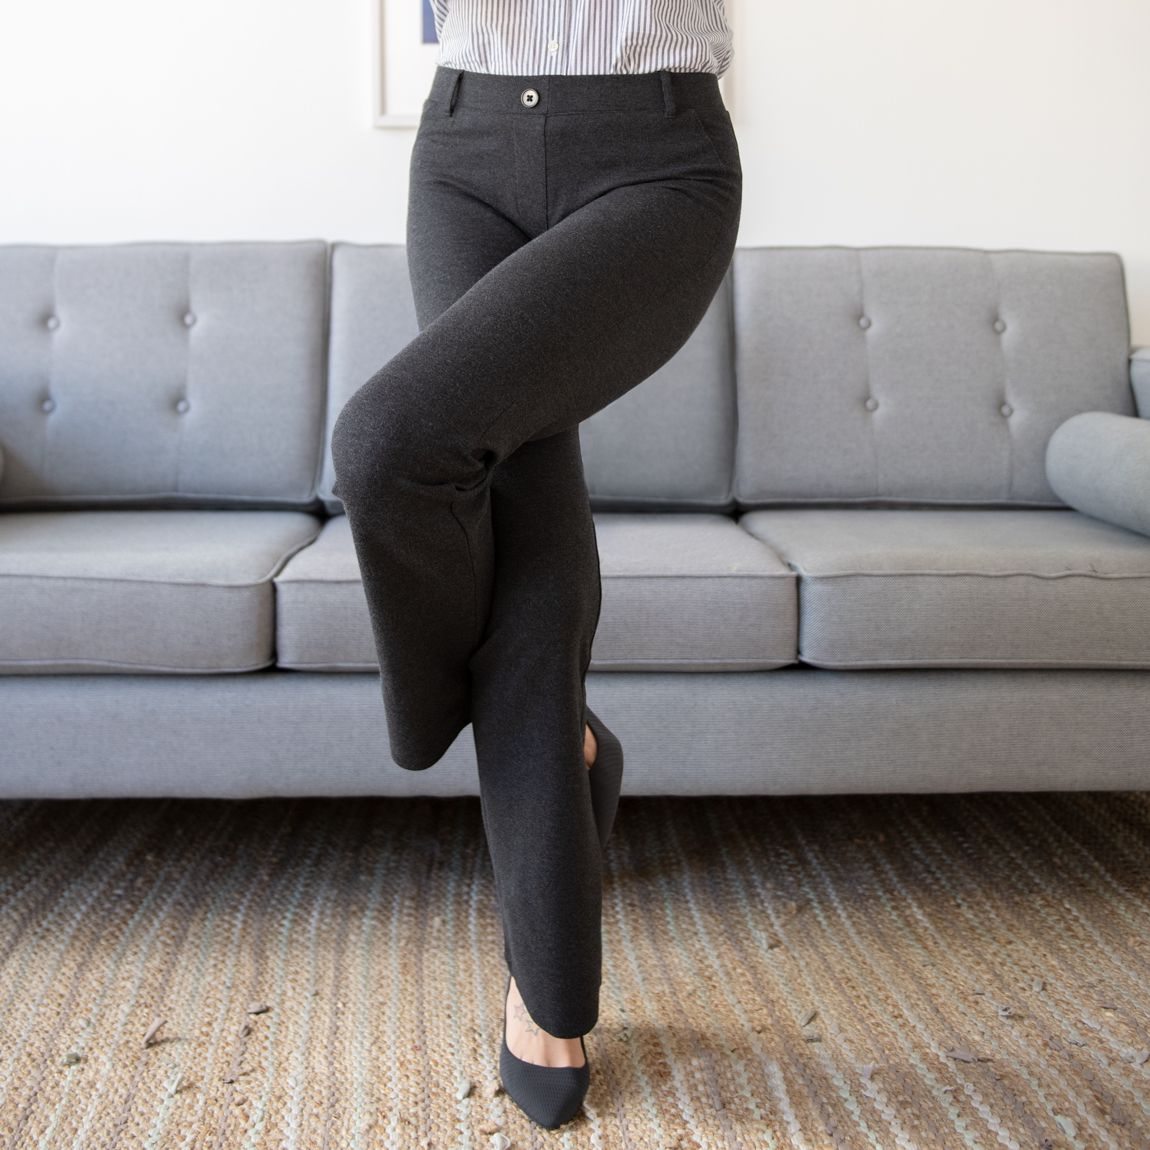 Boot-Cut | Classic Dress Pant Yoga Pants (Charcoal)